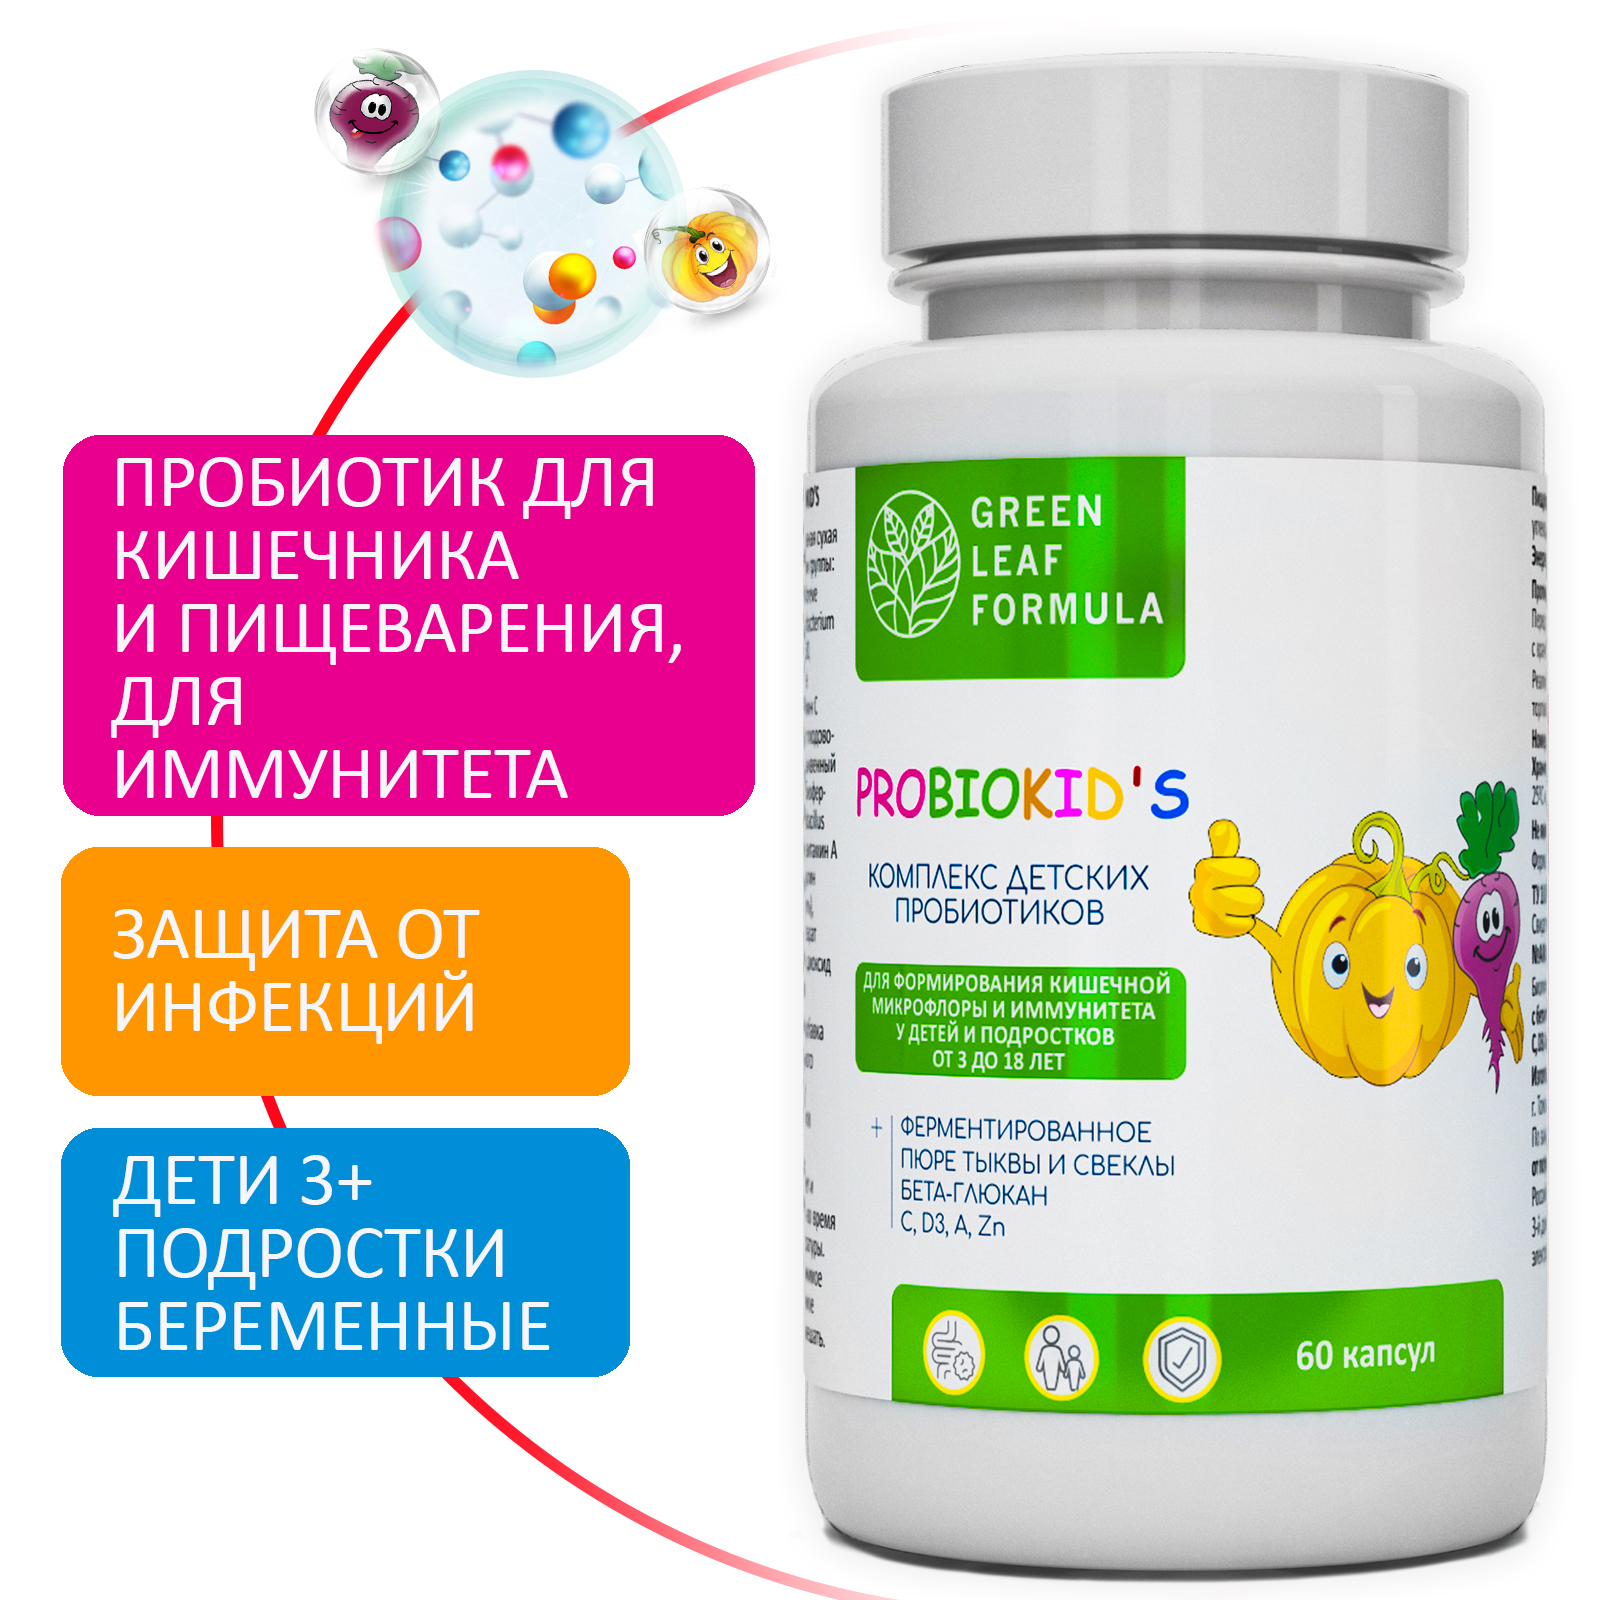 Детский пробиотик и витамины Green Leaf Formula мультивитамины для детей от 3 лет для иммунитета для кишечника - фото 2